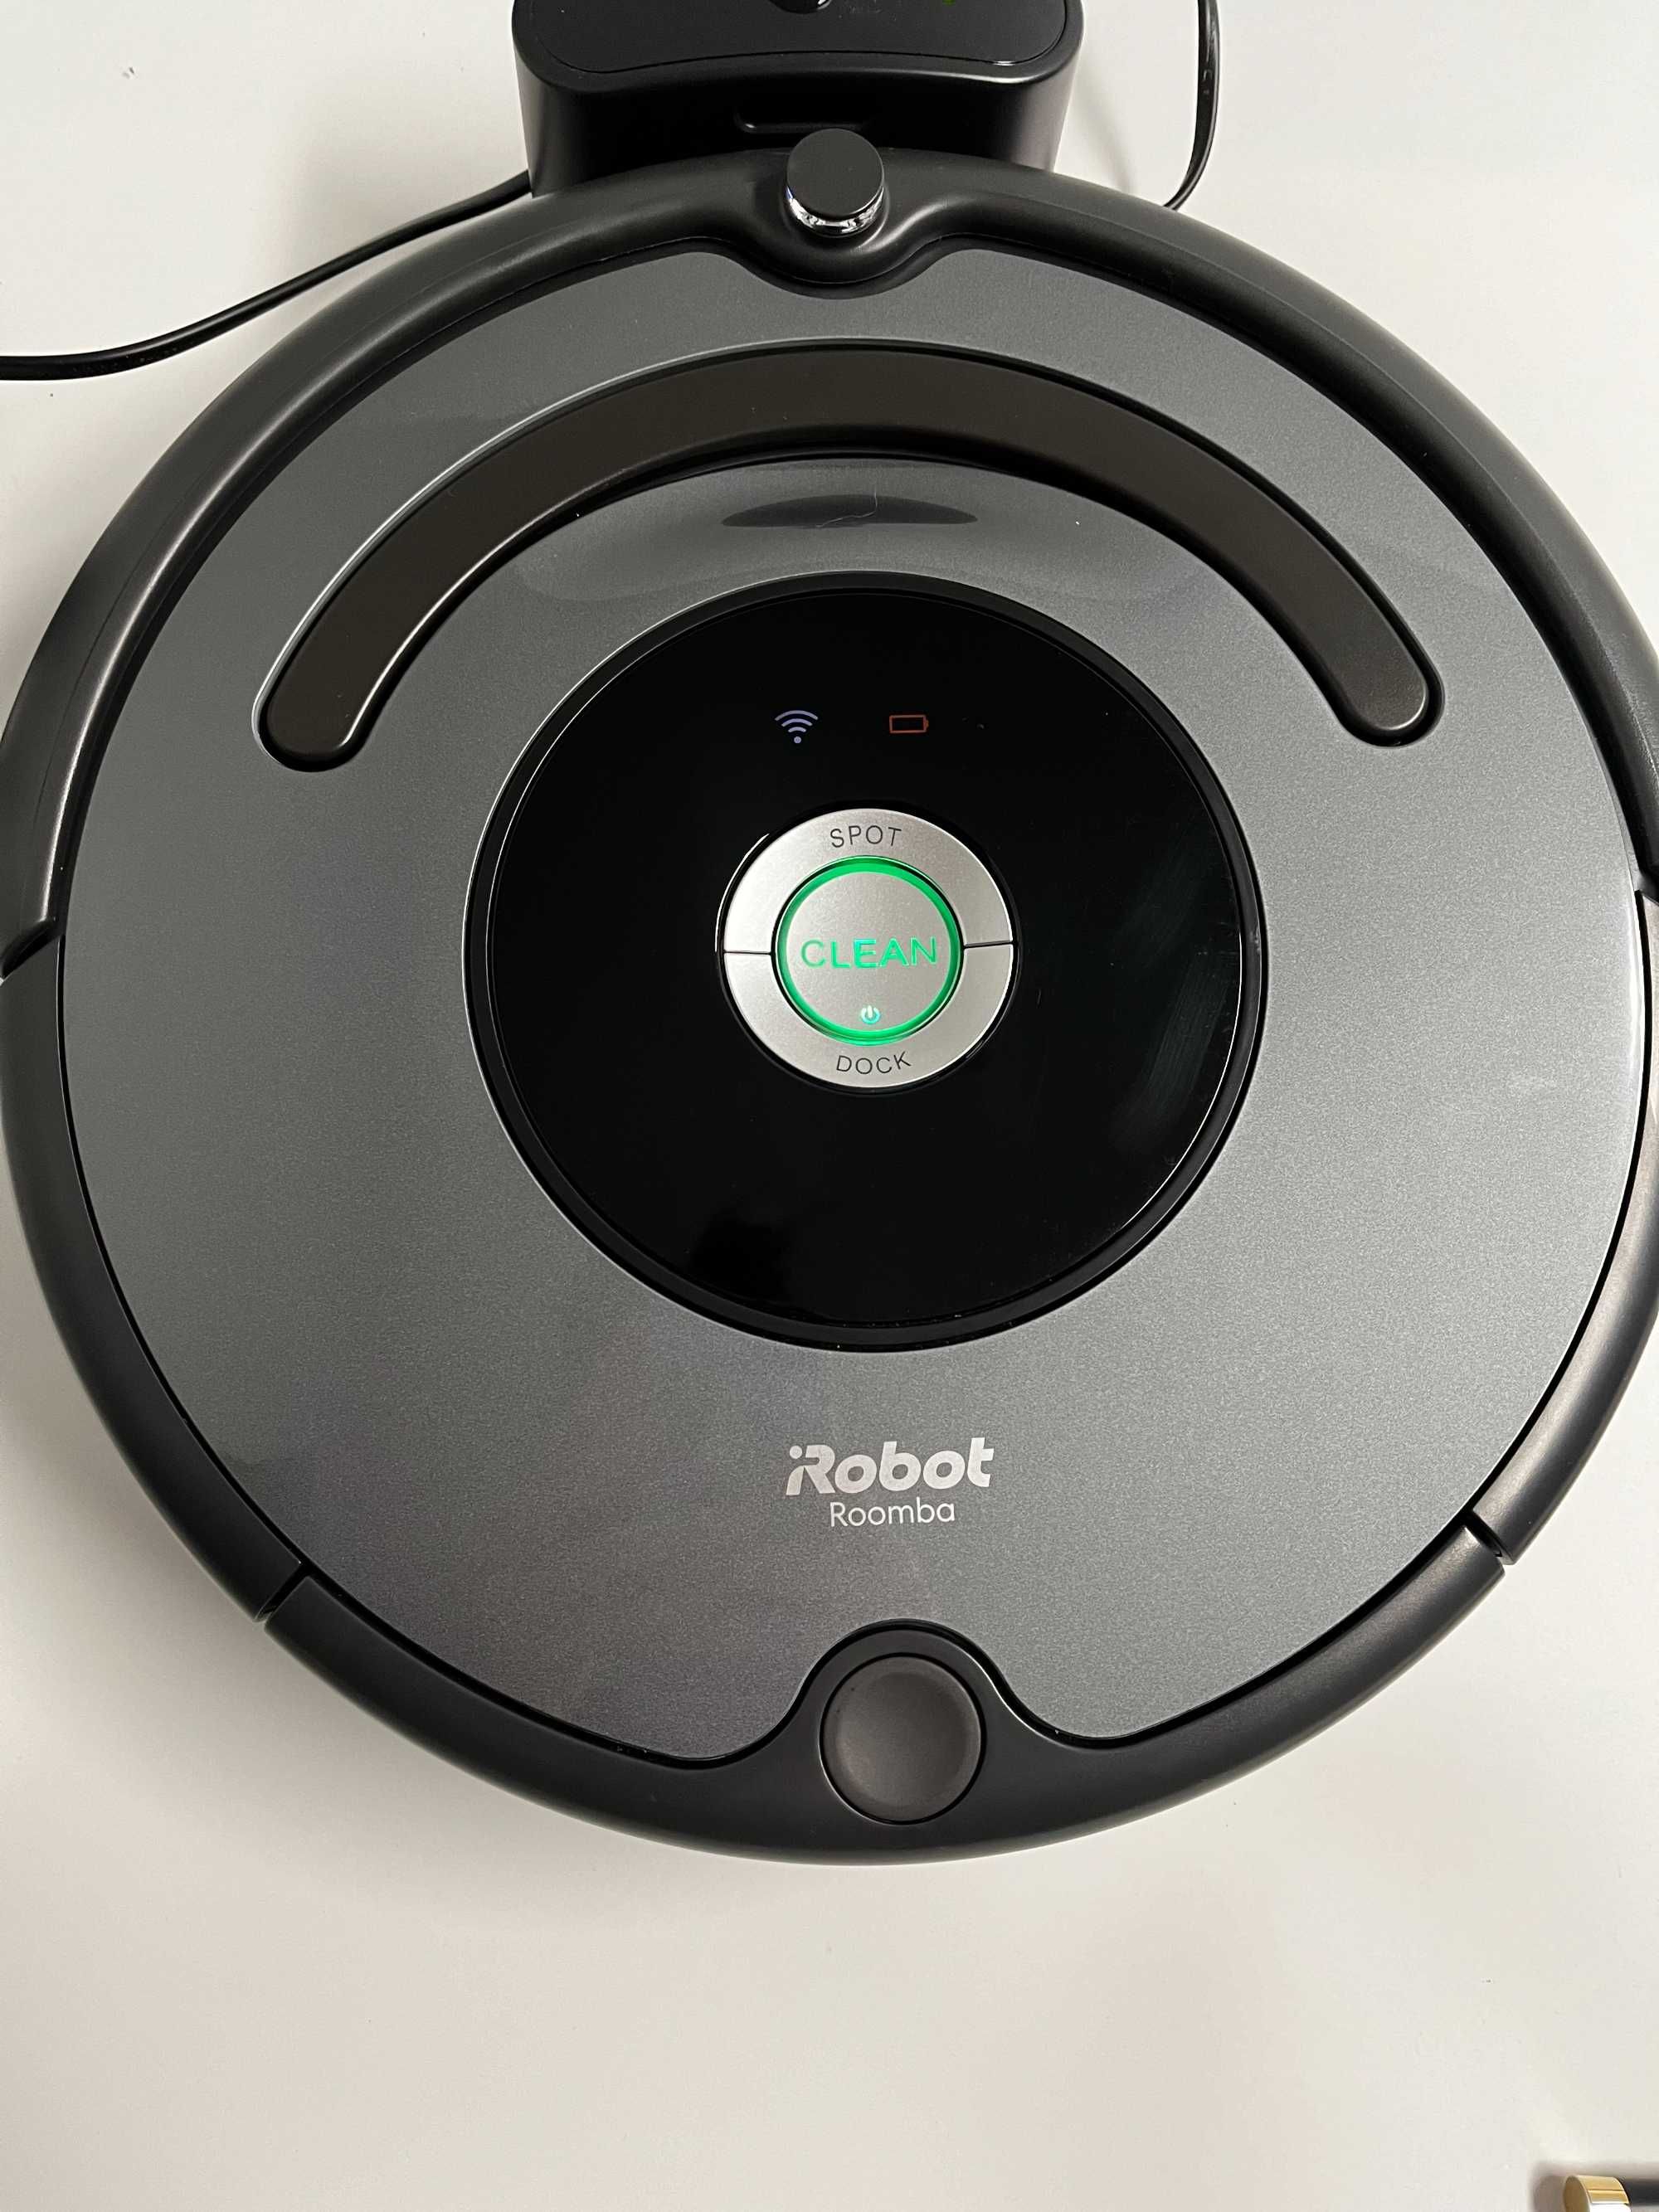 Robot sprzątający iRobot Roomba model 676